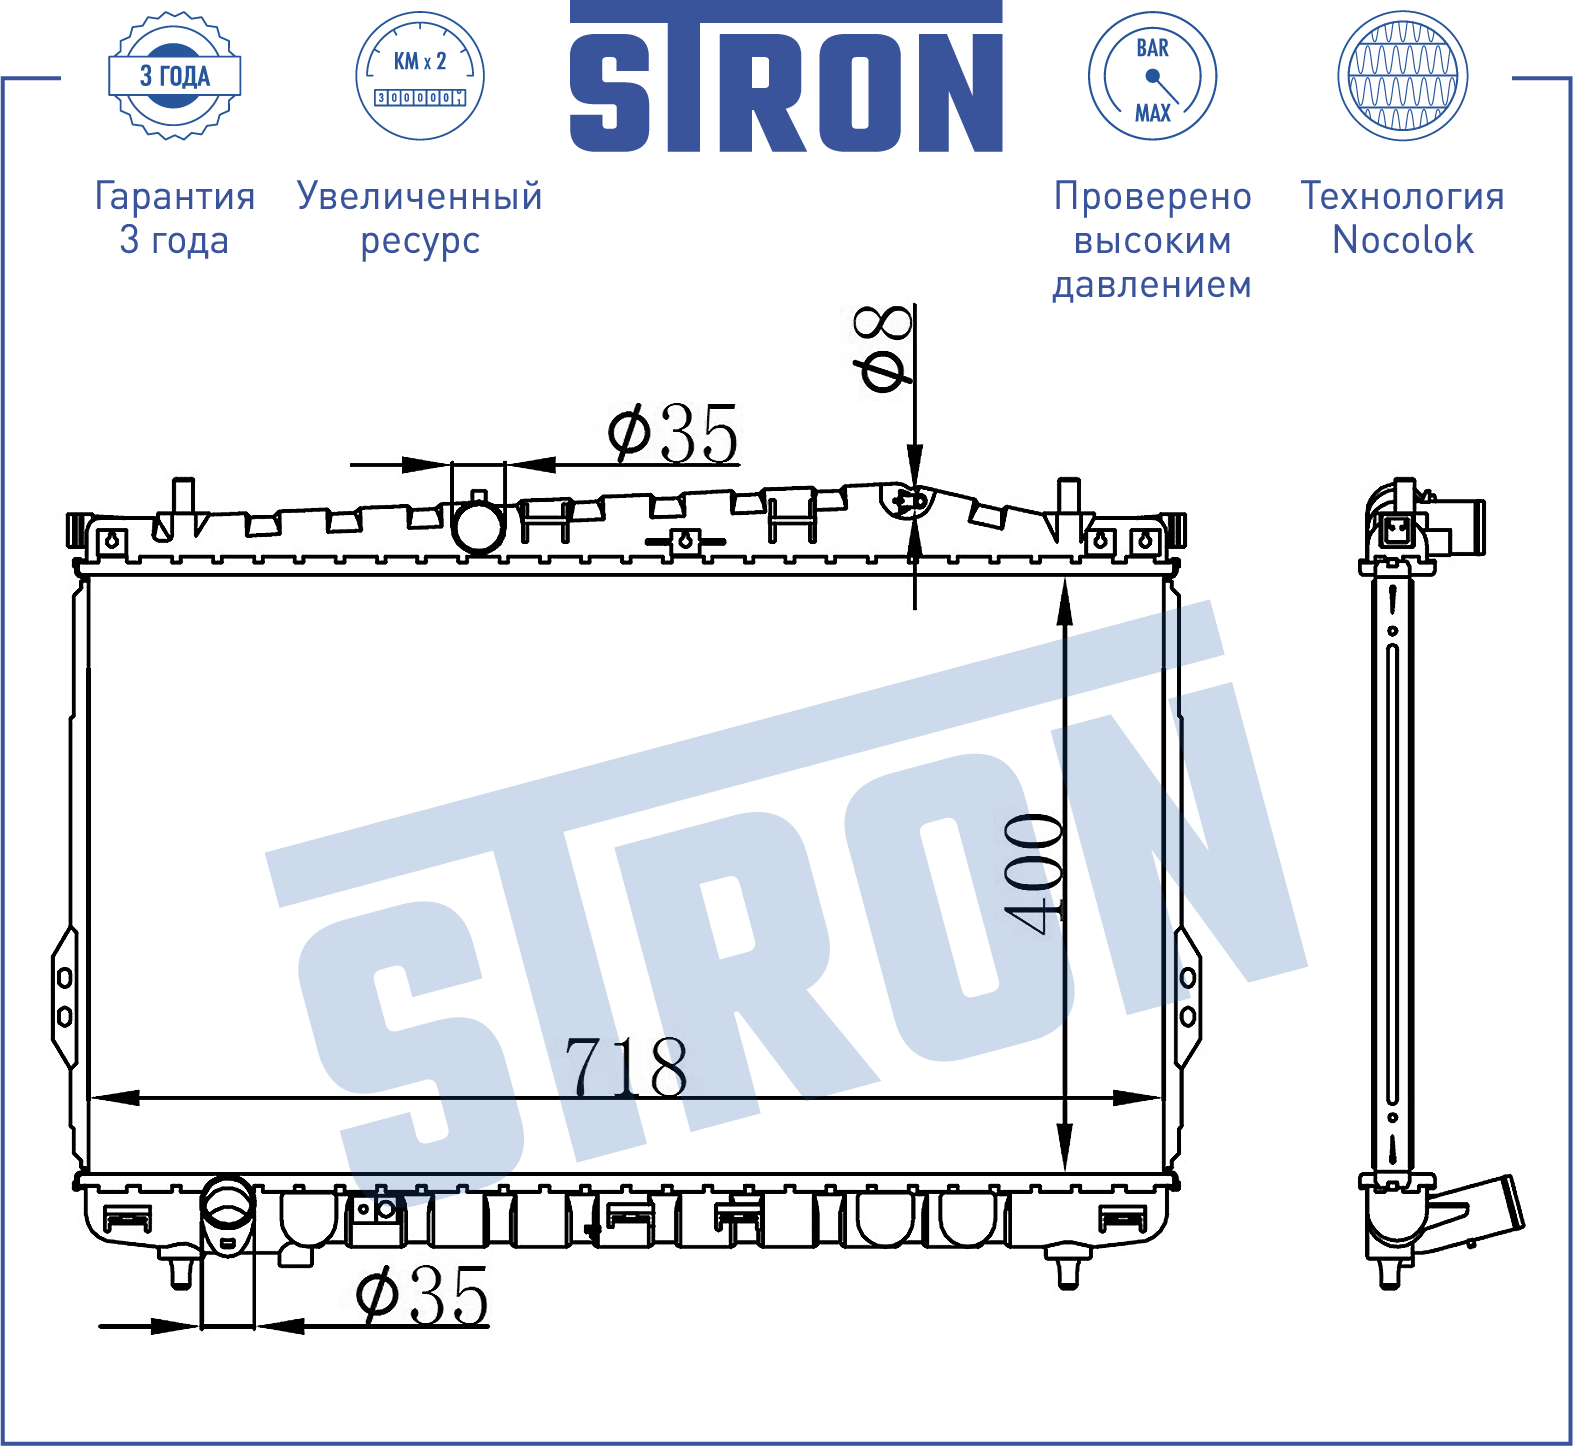 Радитор двигателя (Гарантия 3 года, Увеличенный ресурс) str0418 Stron